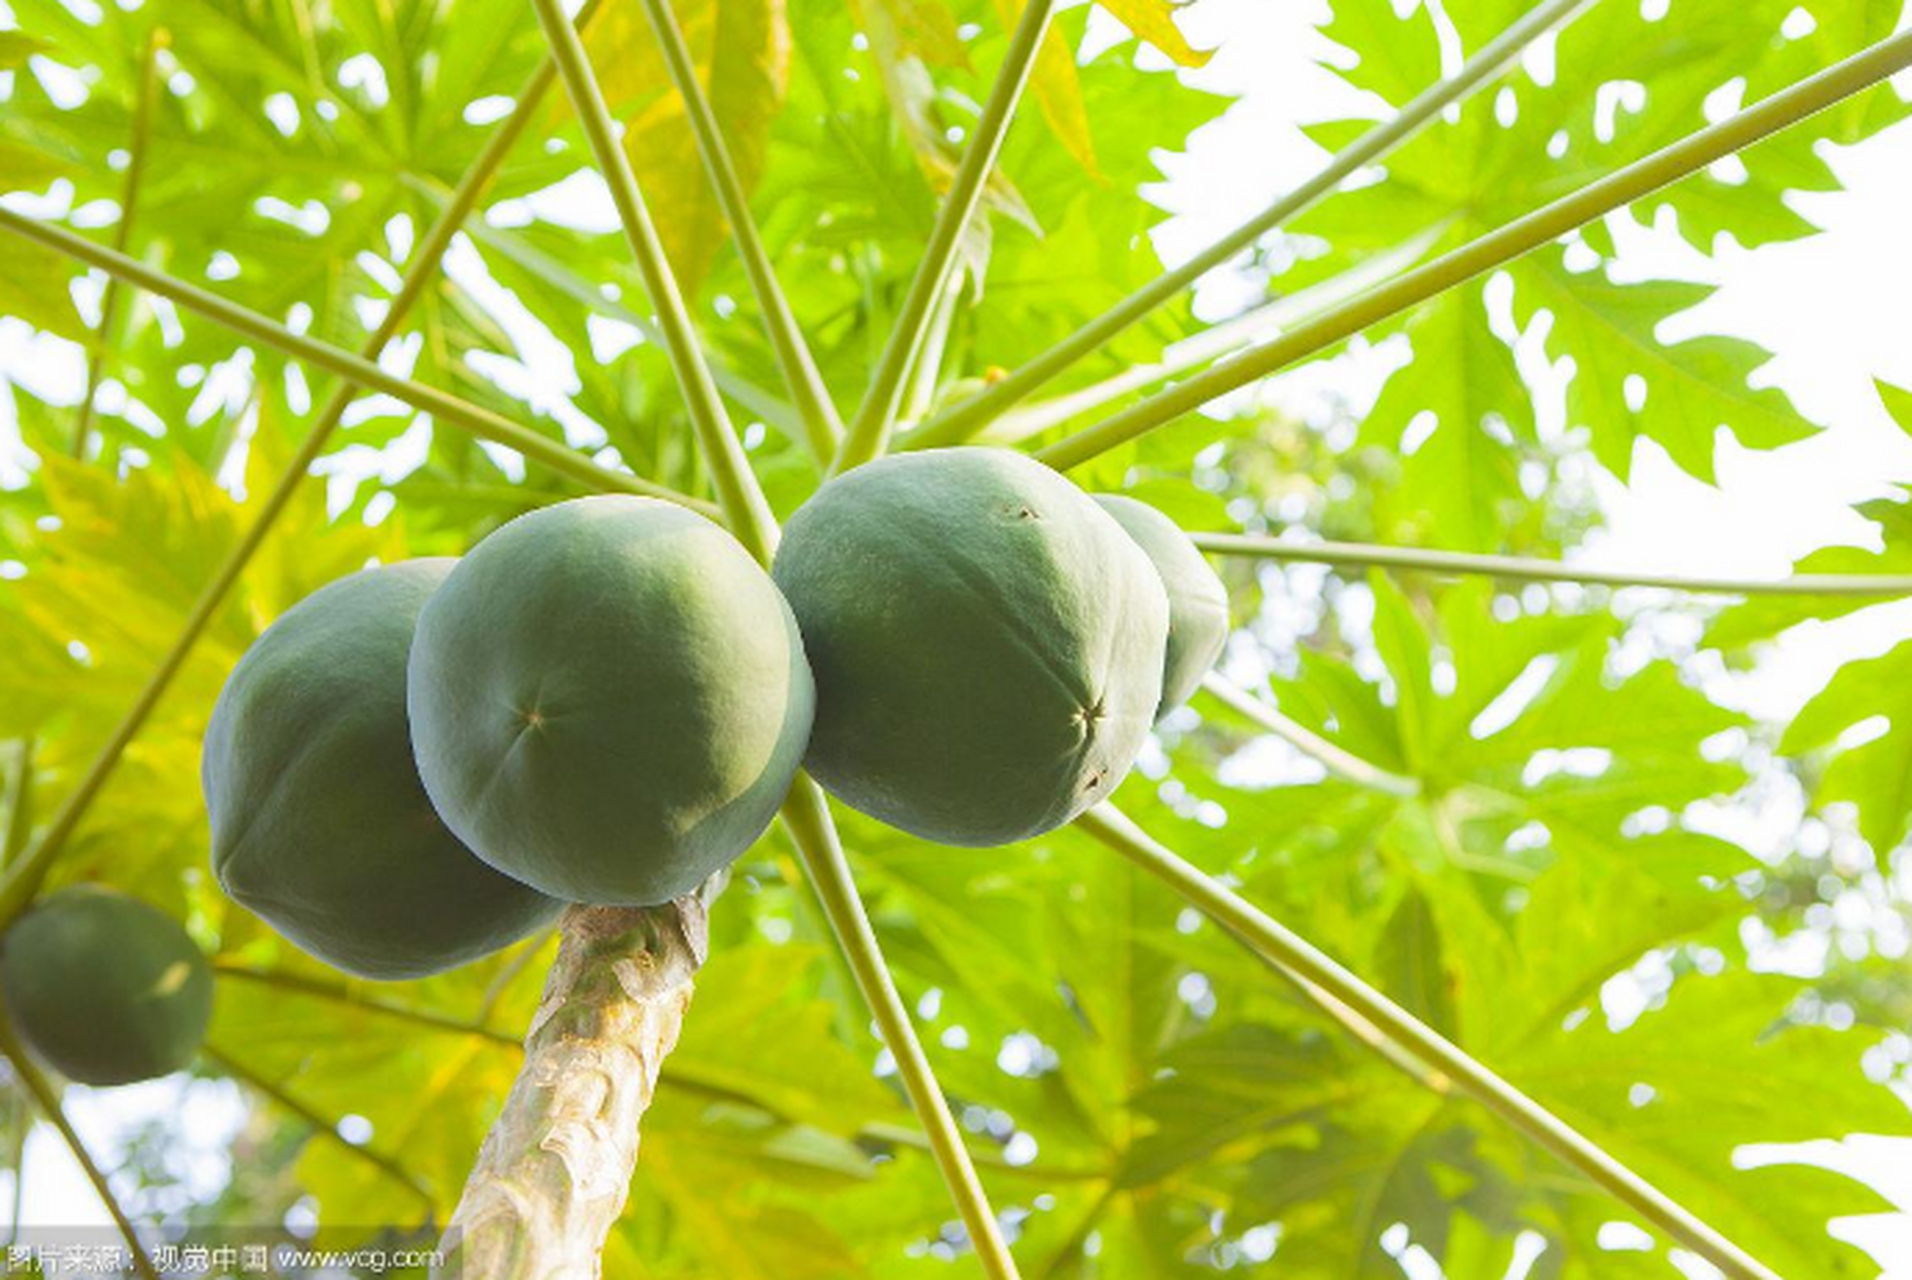 木瓜为蔷薇科落叶灌木植物木瓜的成熟果实